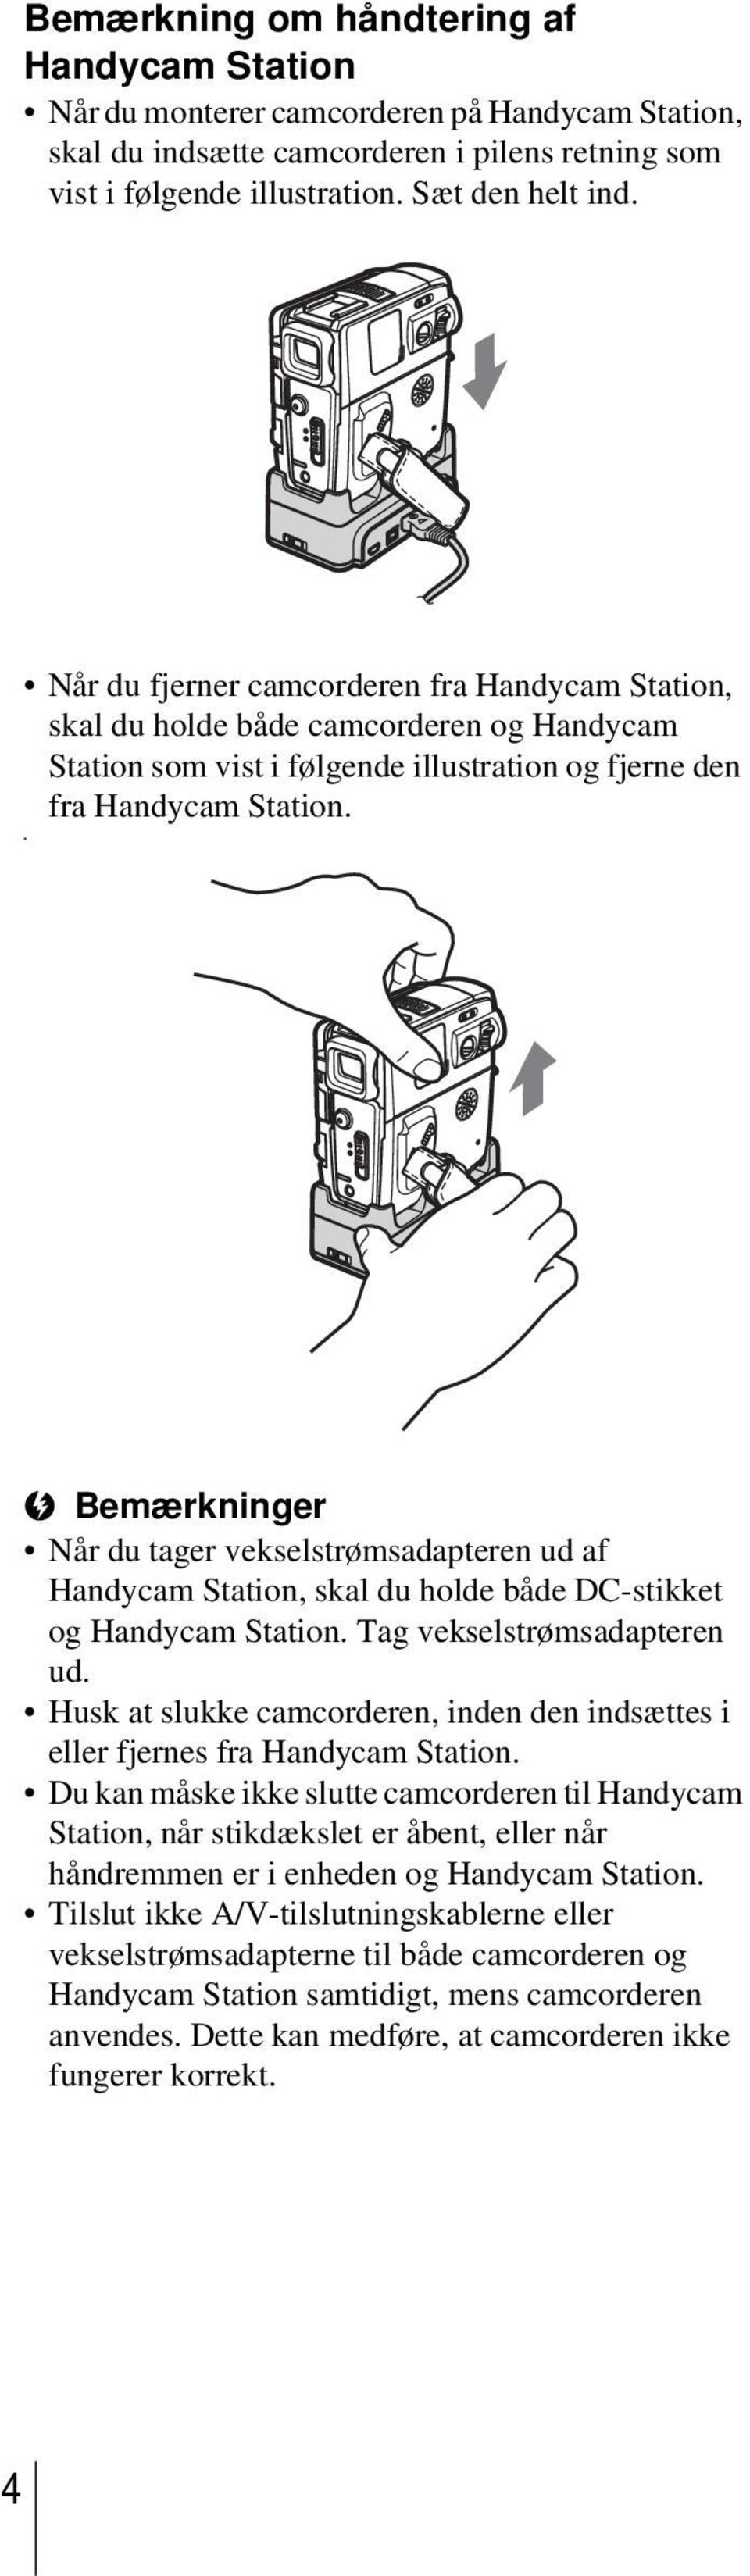 b Bemærkninger Når du tager vekselstrømsadapteren ud af Handycam Station, skal du holde både DC-stikket og Handycam Station. Tag vekselstrømsadapteren ud.